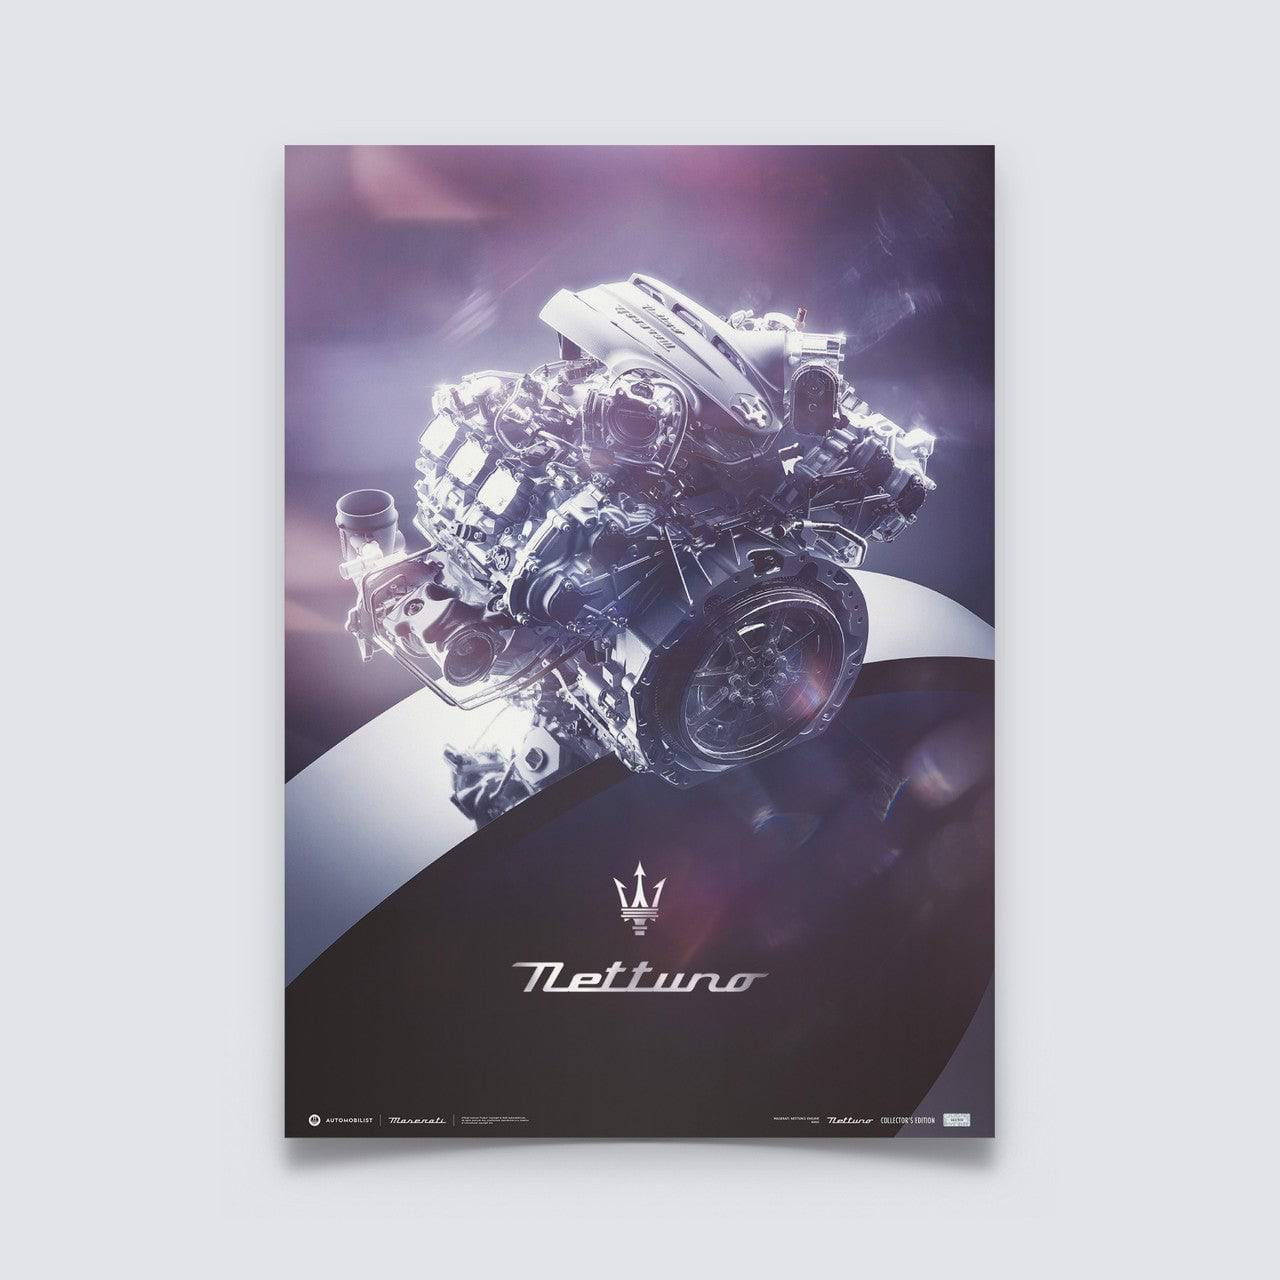 Maserati Nettuno - Engine - The Ring | Collector’s Edition